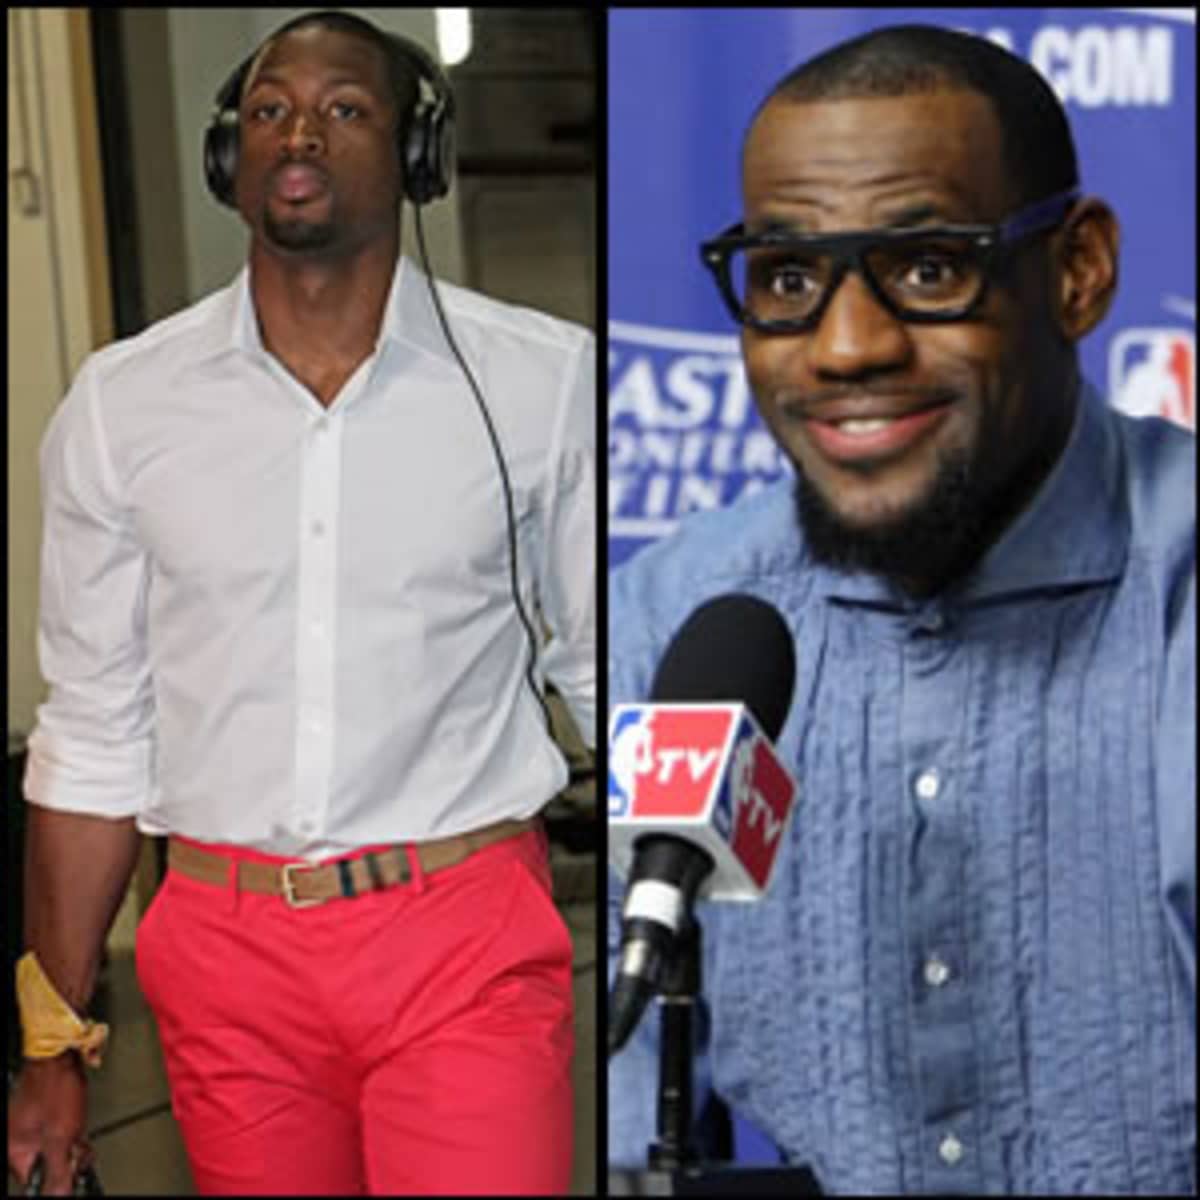 Warum tragen NBA Spieler Tights & Knie-Bandagen? 🏀